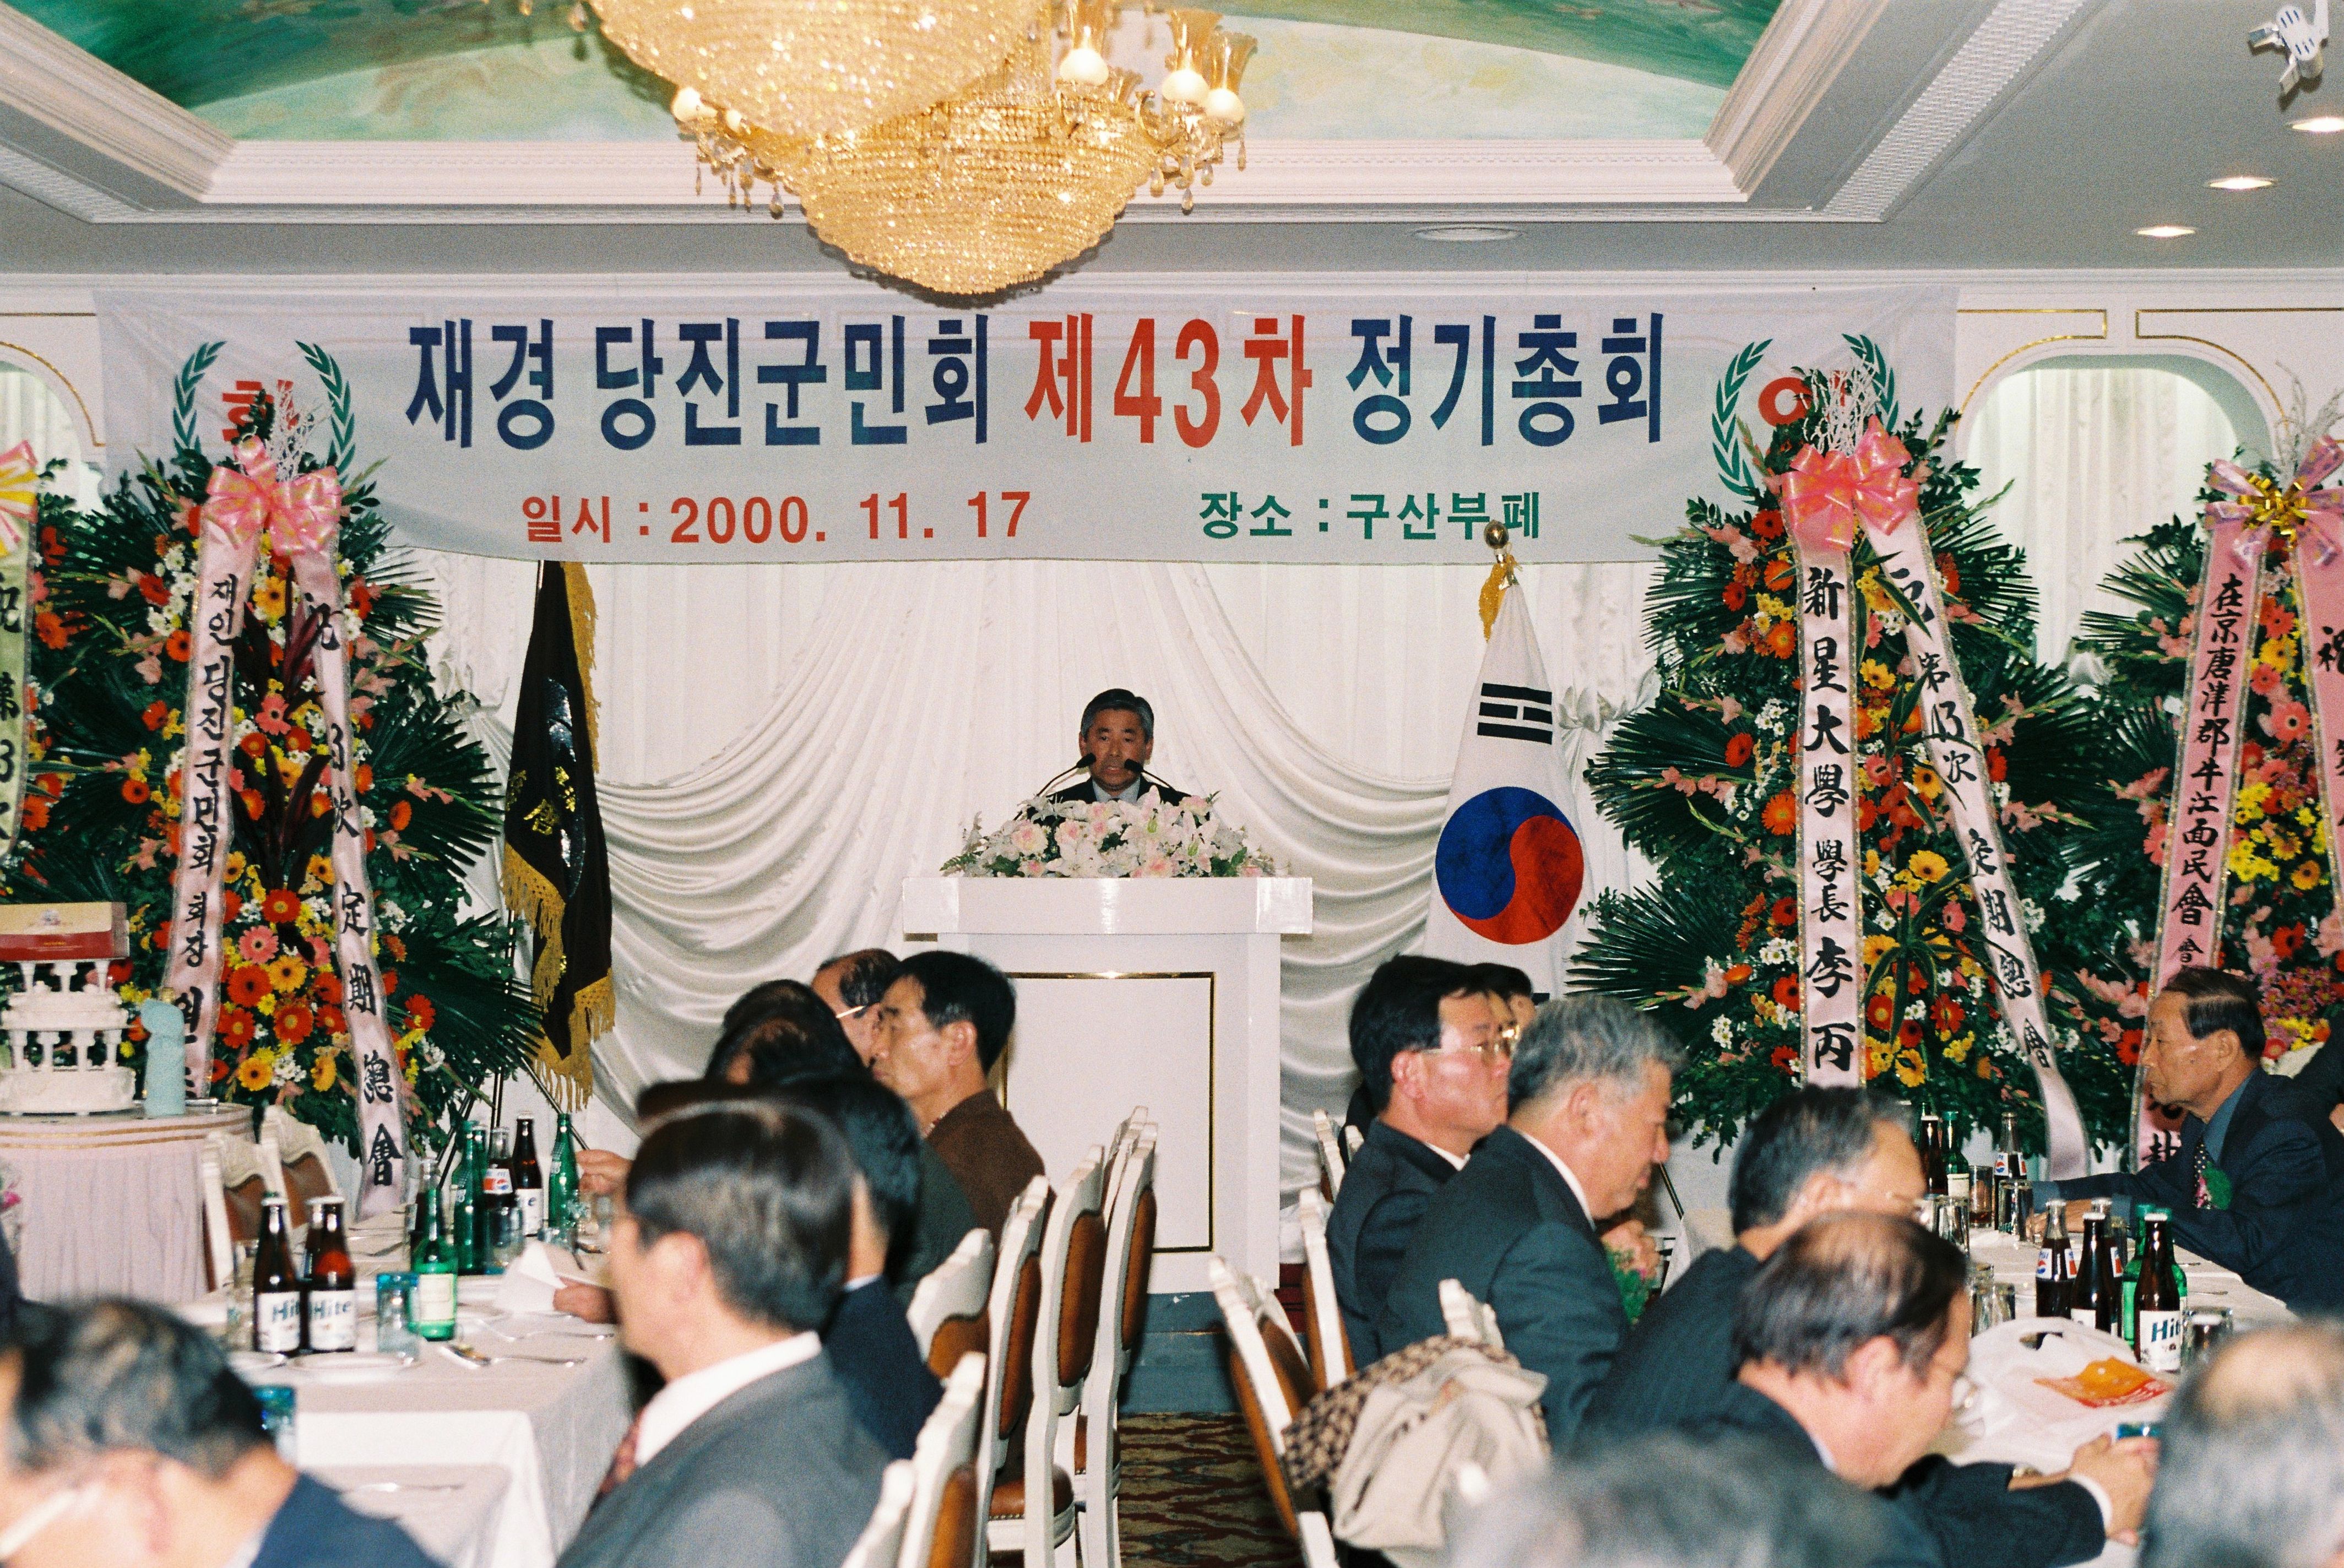 사진자료(2000년대)/2000/재경 당진군민회 제43차 정기총회② 1/